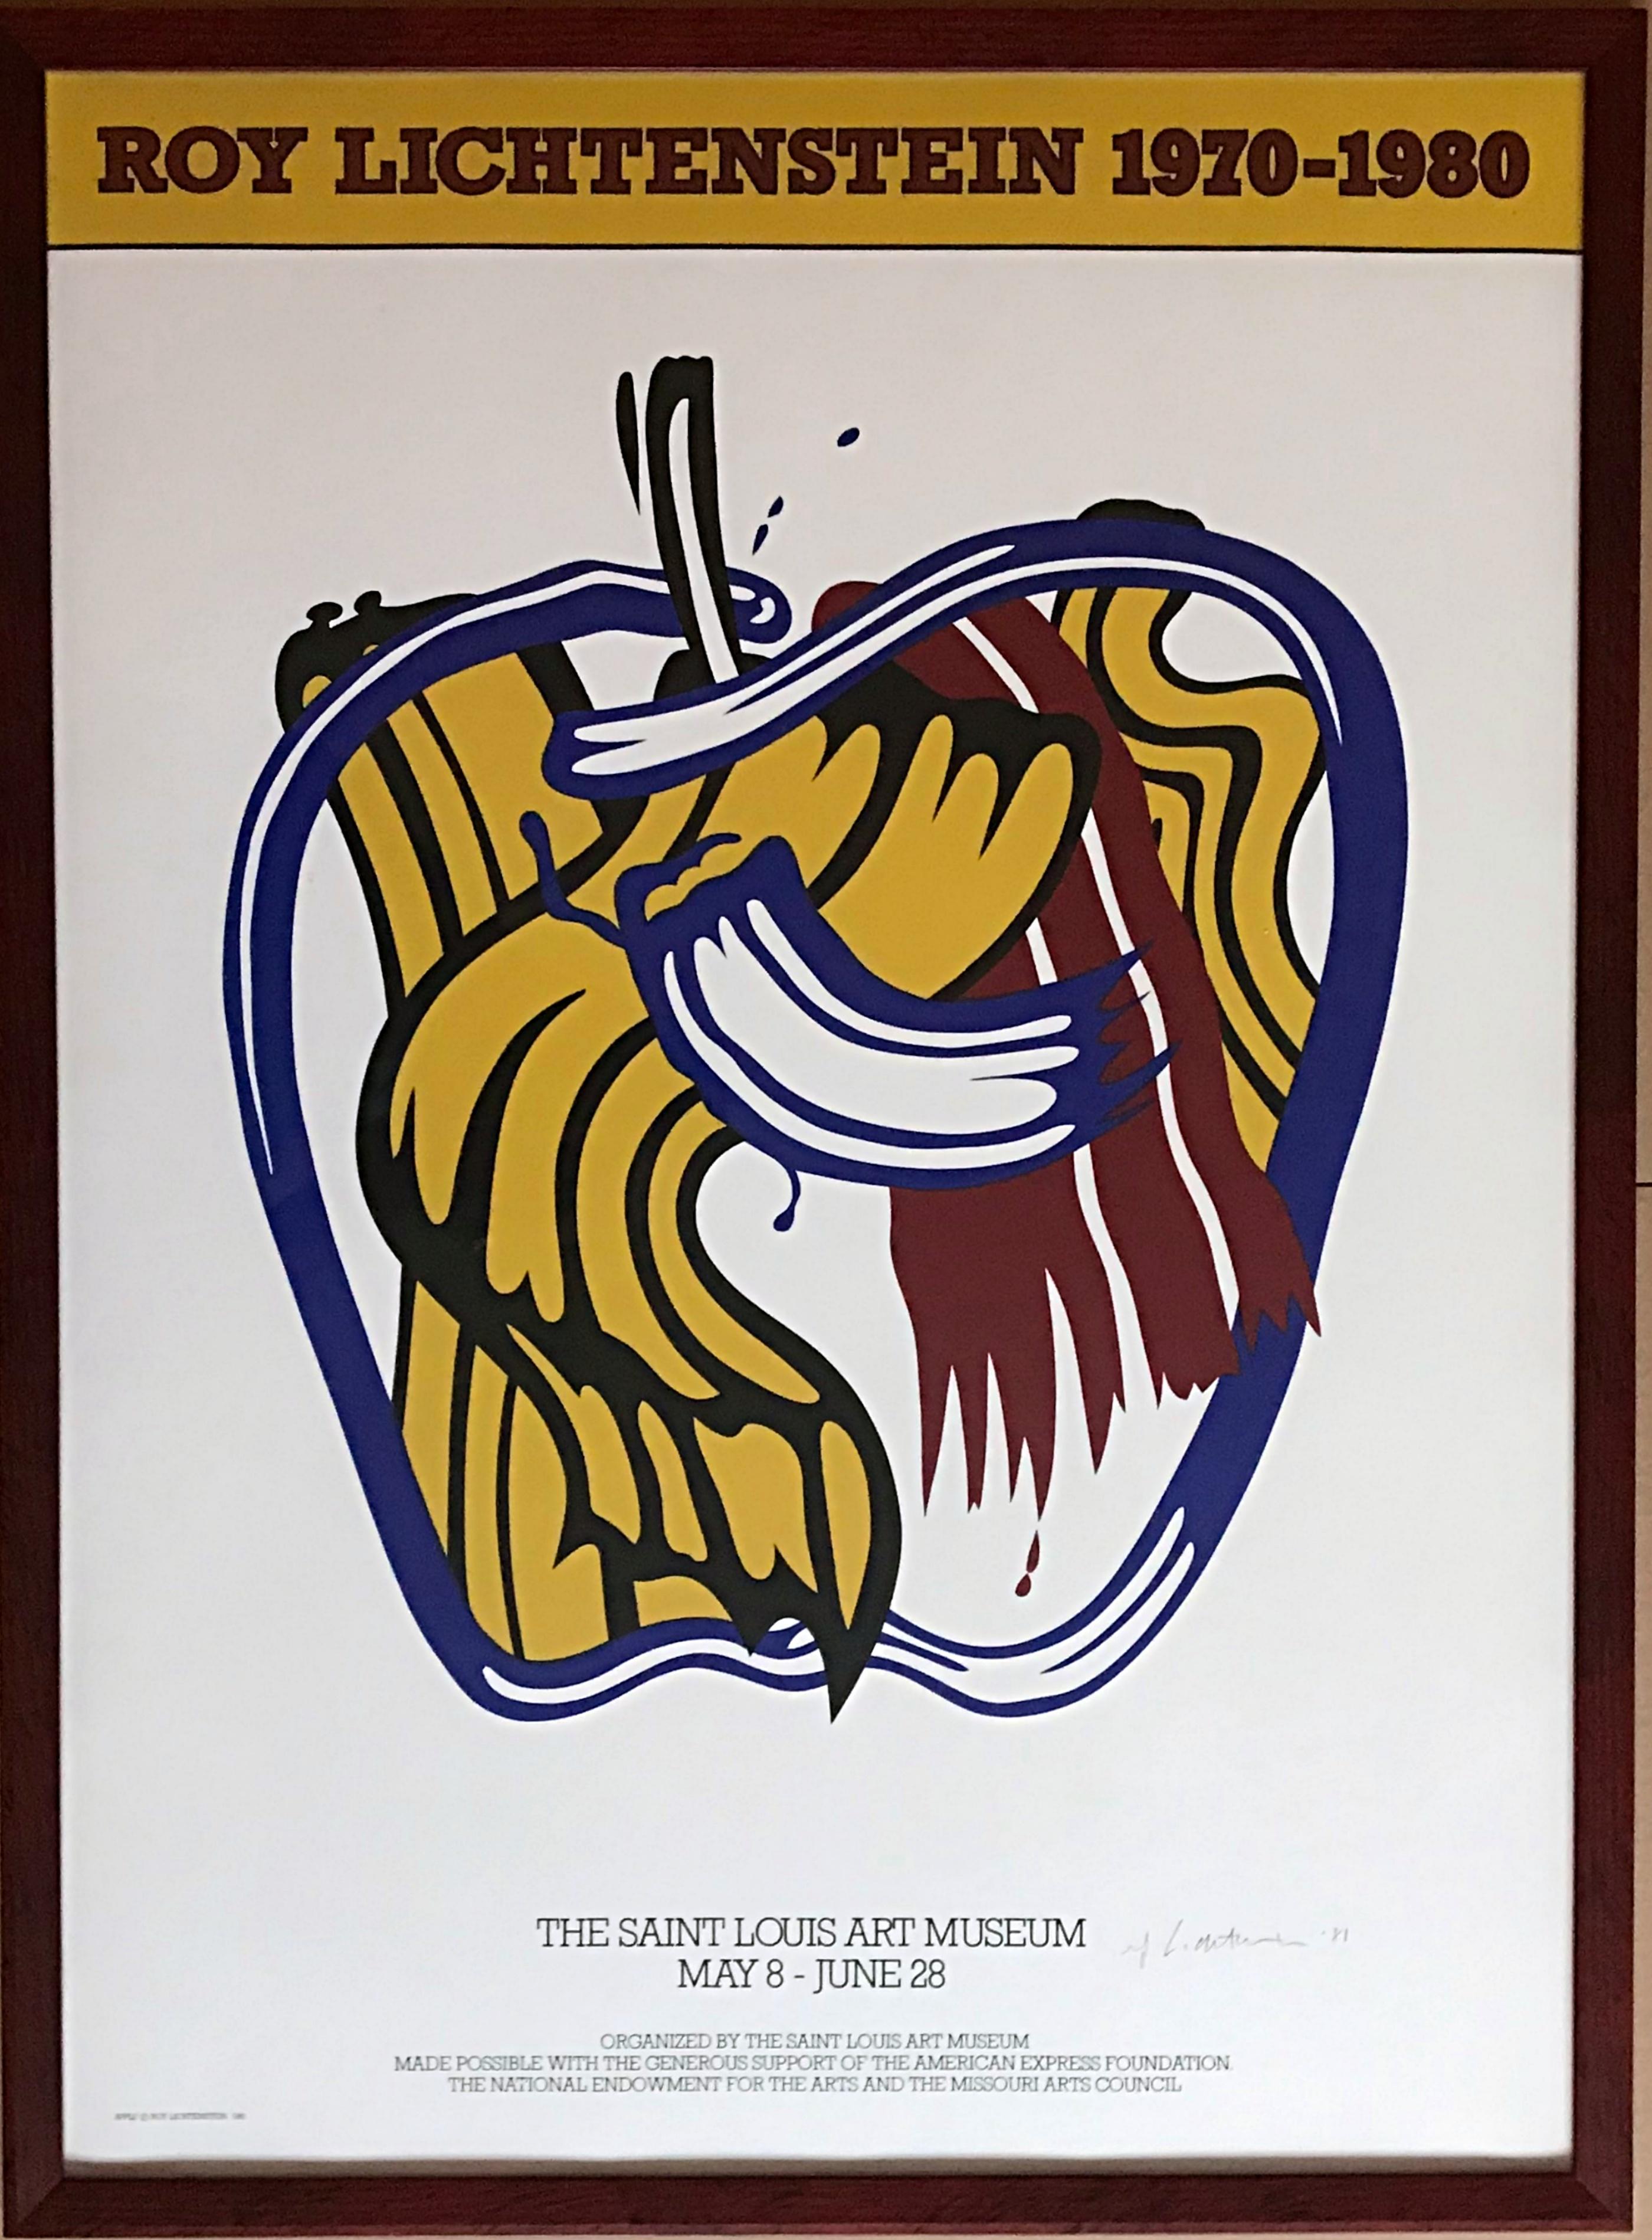 Roy Lichtenstein
Roy Lichtenstein 1970-1980 (signé à la main et daté par Roy Lichtenstein), 1981
Lithographie offset. Signé et daté à l'encre
Signé à la main par l'artiste, signé et daté à l'encre au recto. Un des 100 exemplaires signés par